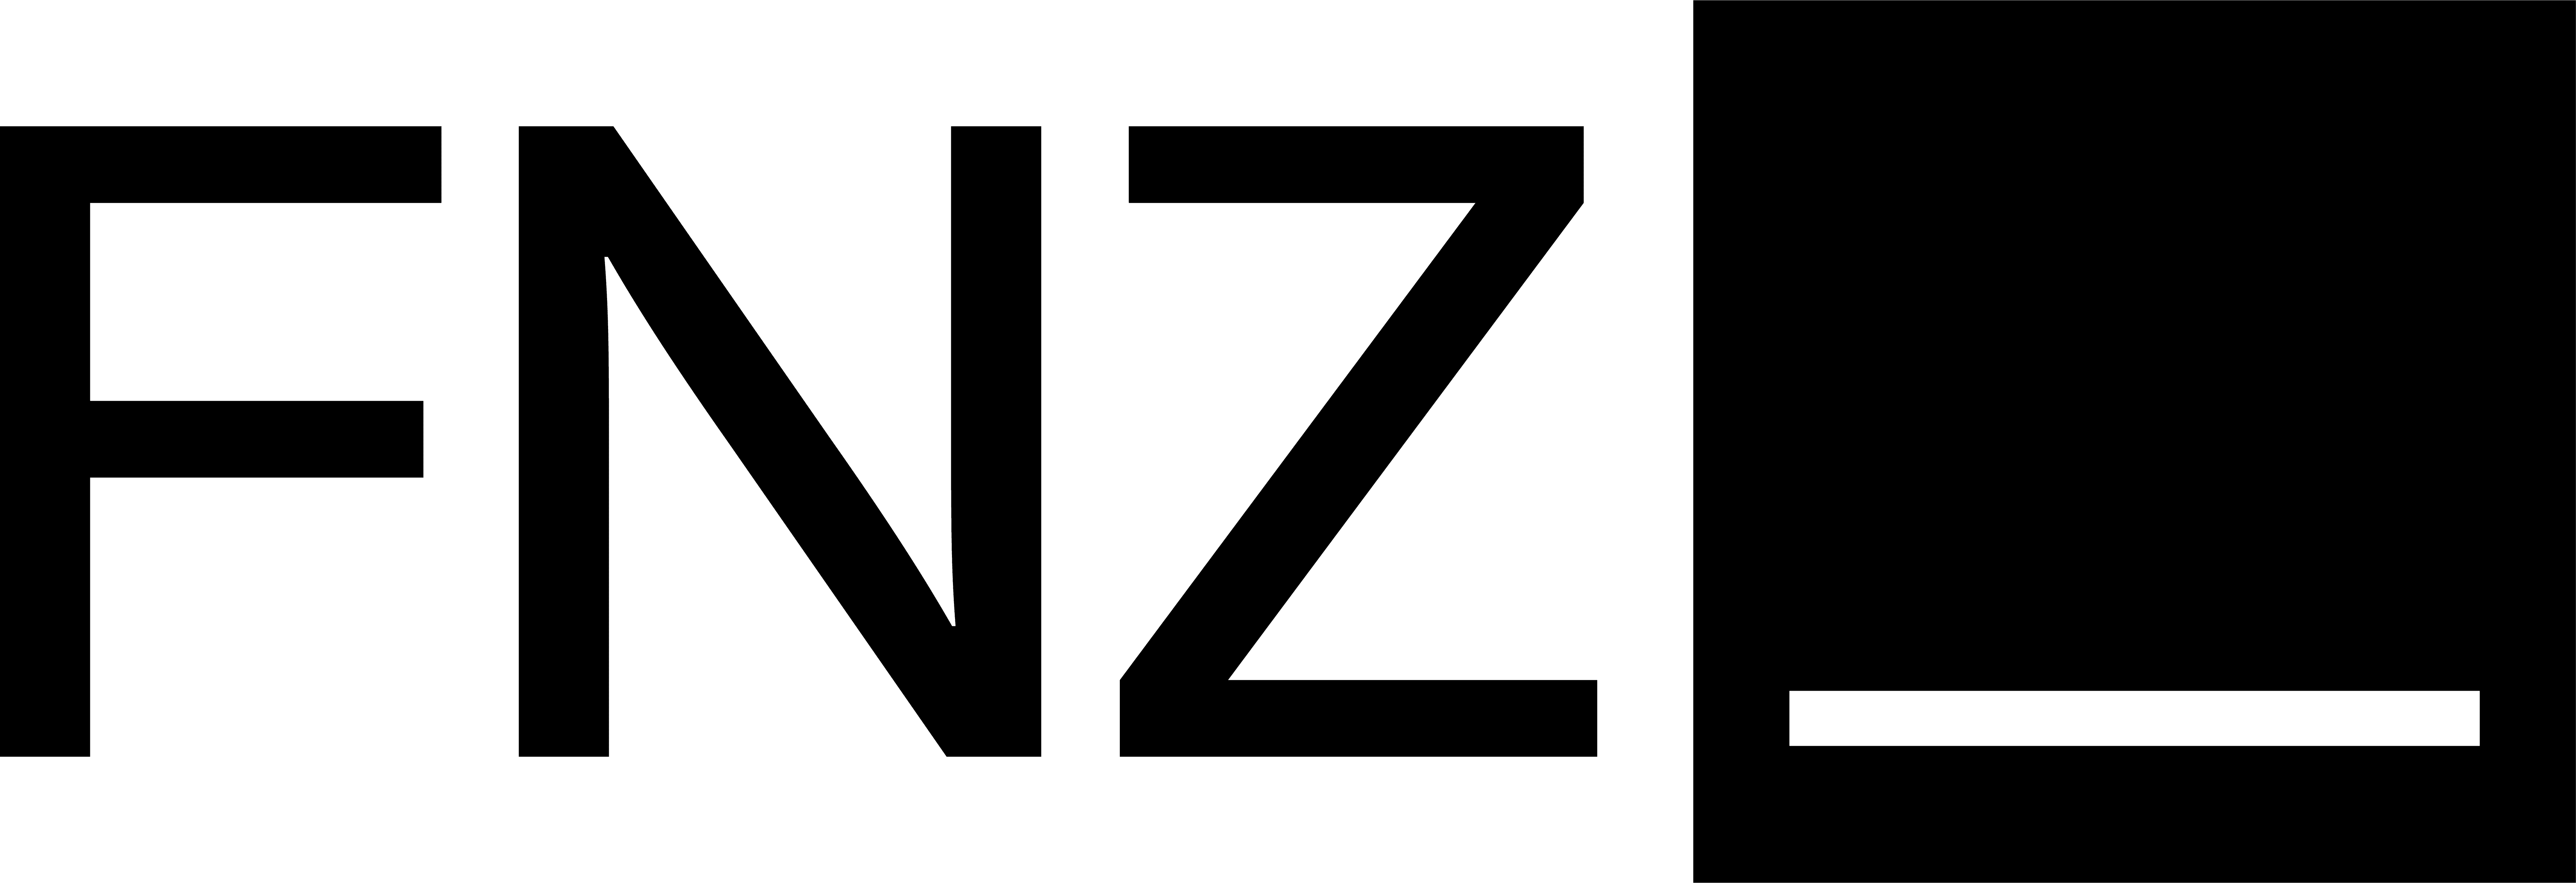 Business Depot für juristische Personen FNZ Bank